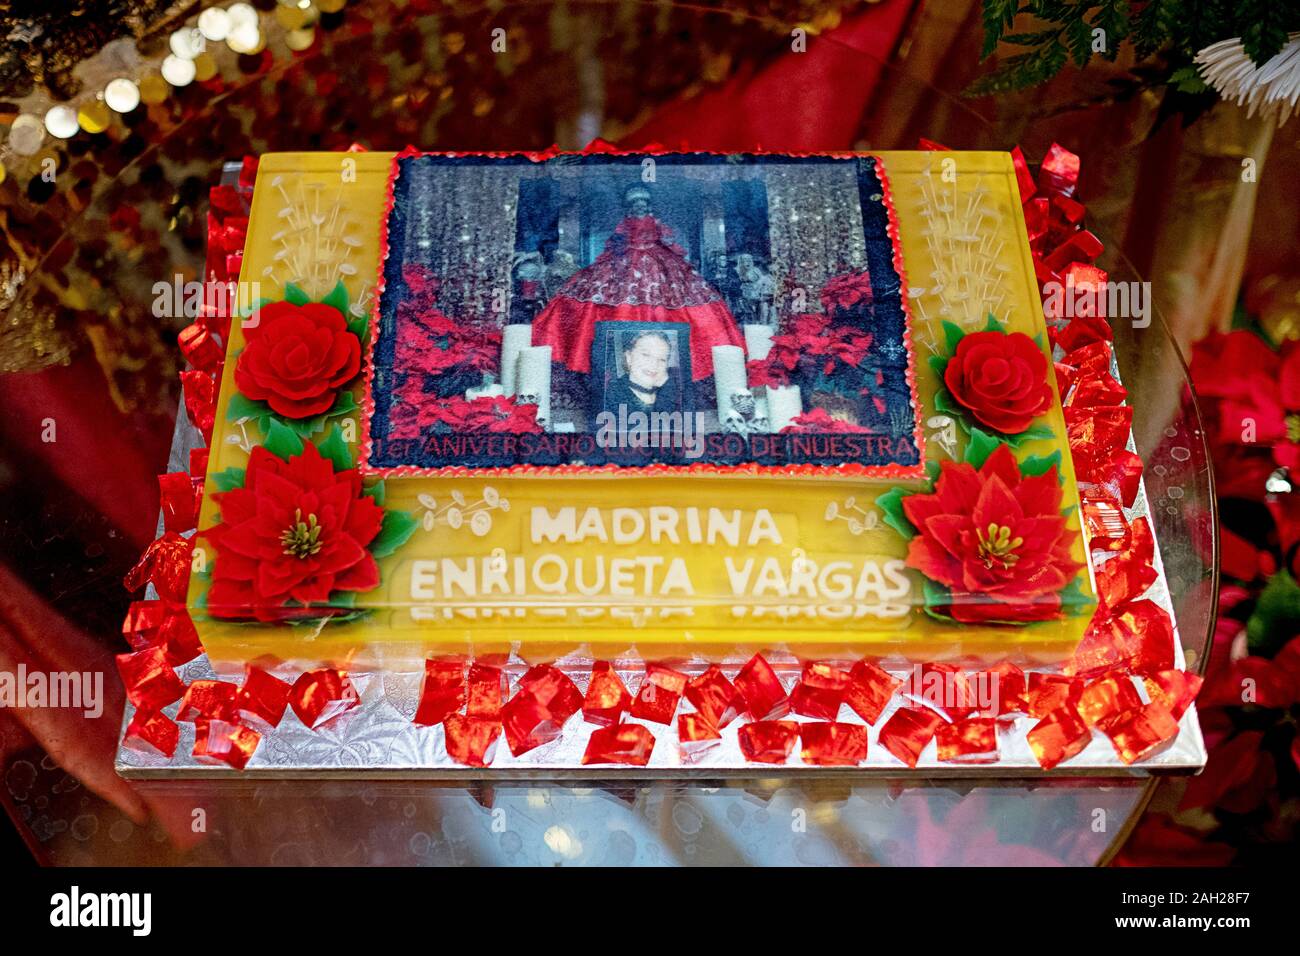 Un appositamente decorate servito dopo un servizio in lutto per l'anniversario del passaggio di Enriqueta Vargas, il leader della Santa Muerte International. Foto Stock